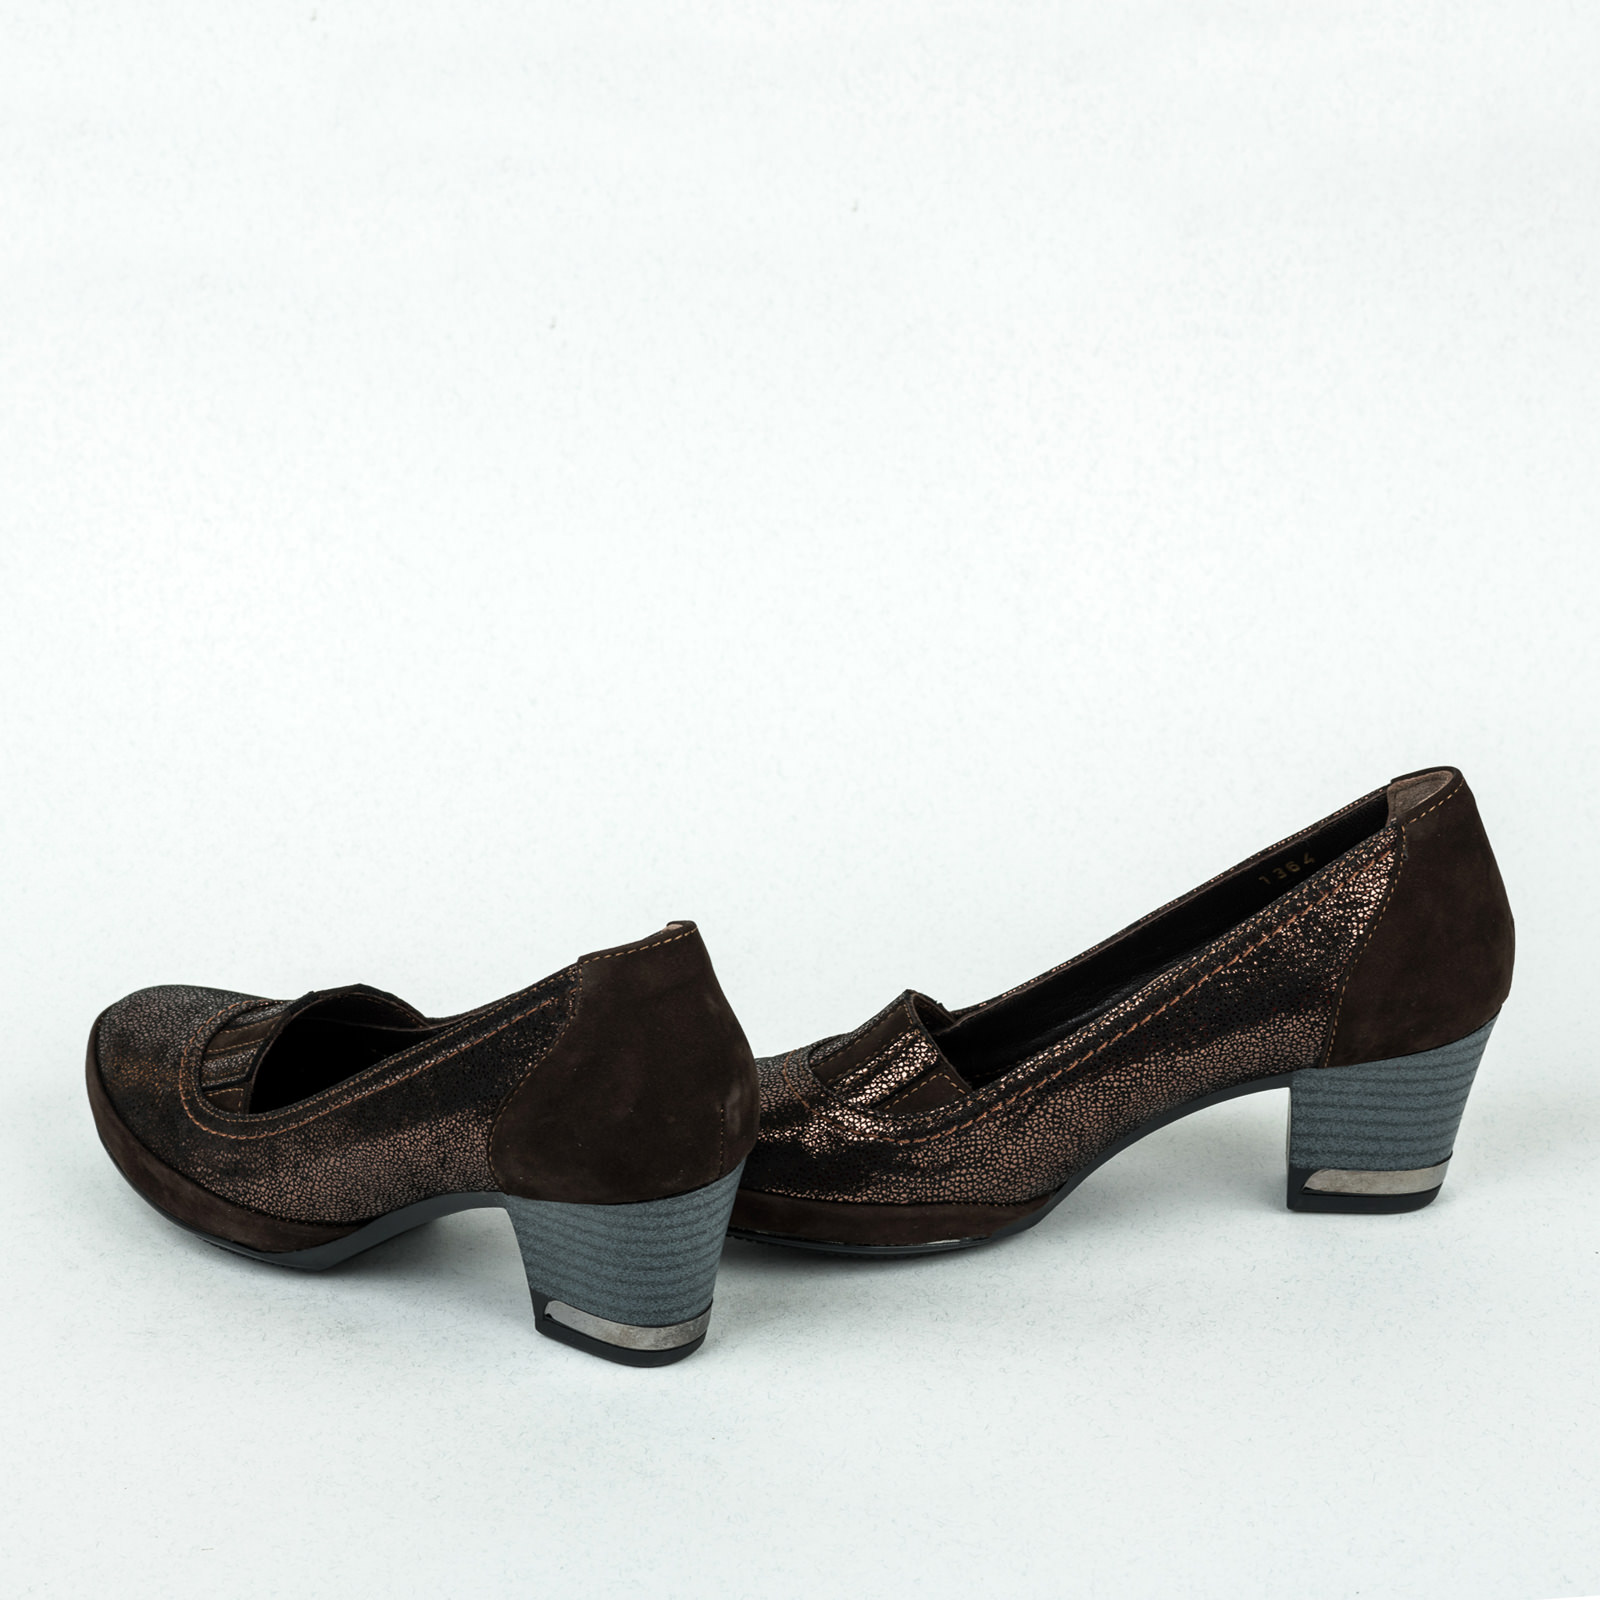 Bőr alkalmi cipő B061 - BARNA